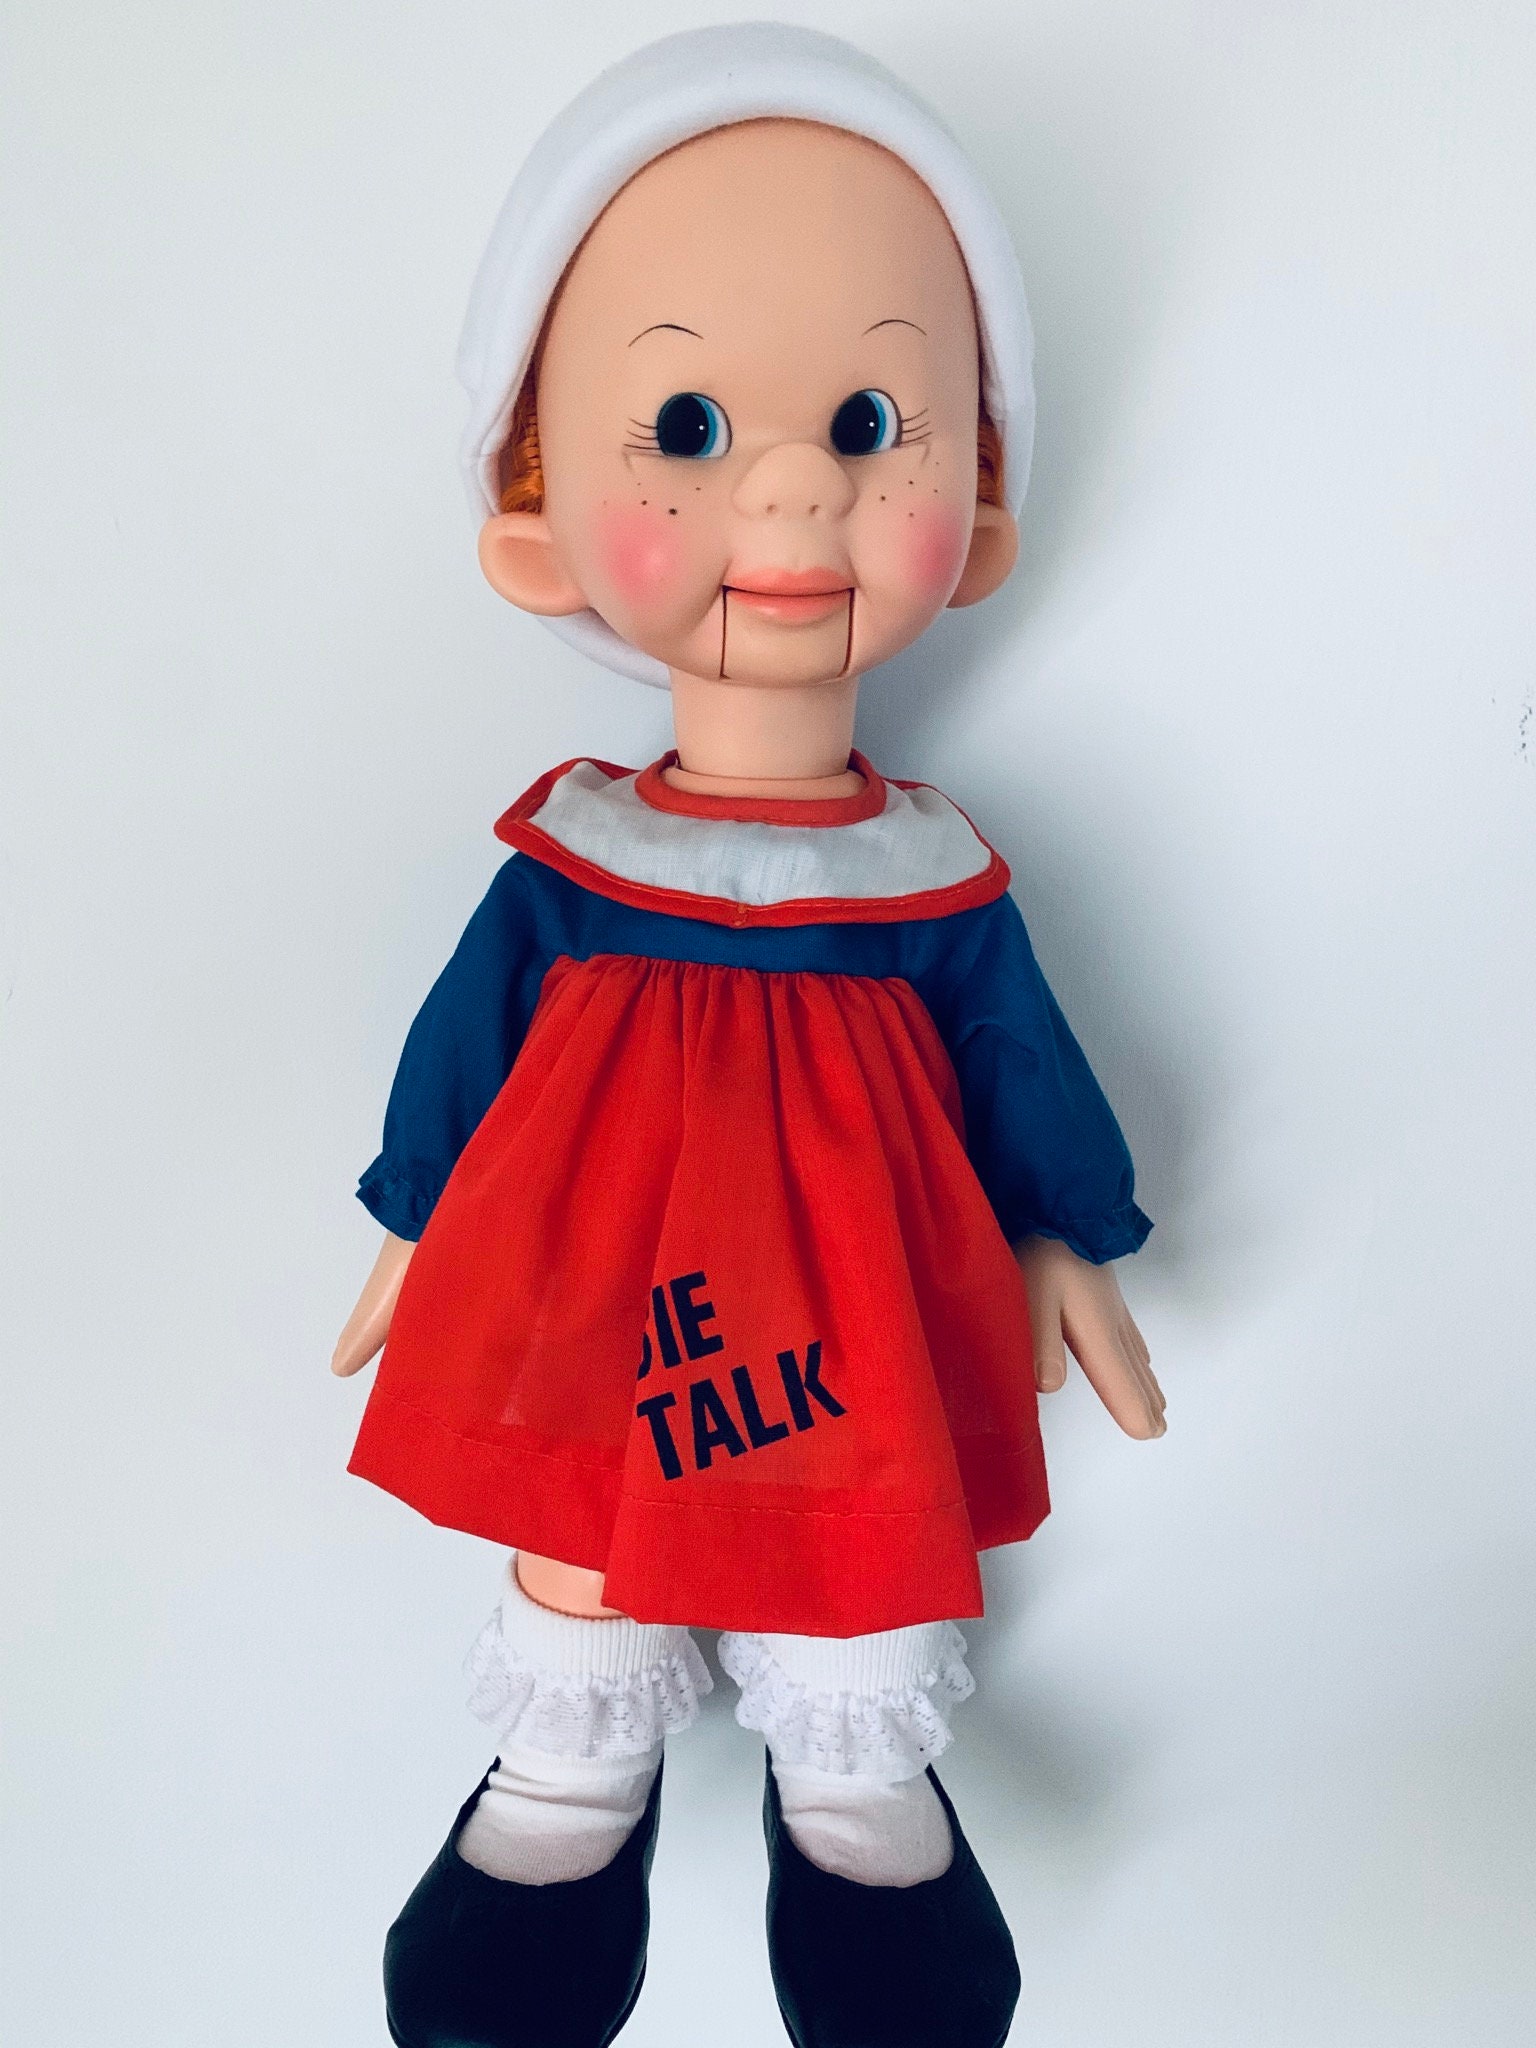 tessie talk doll